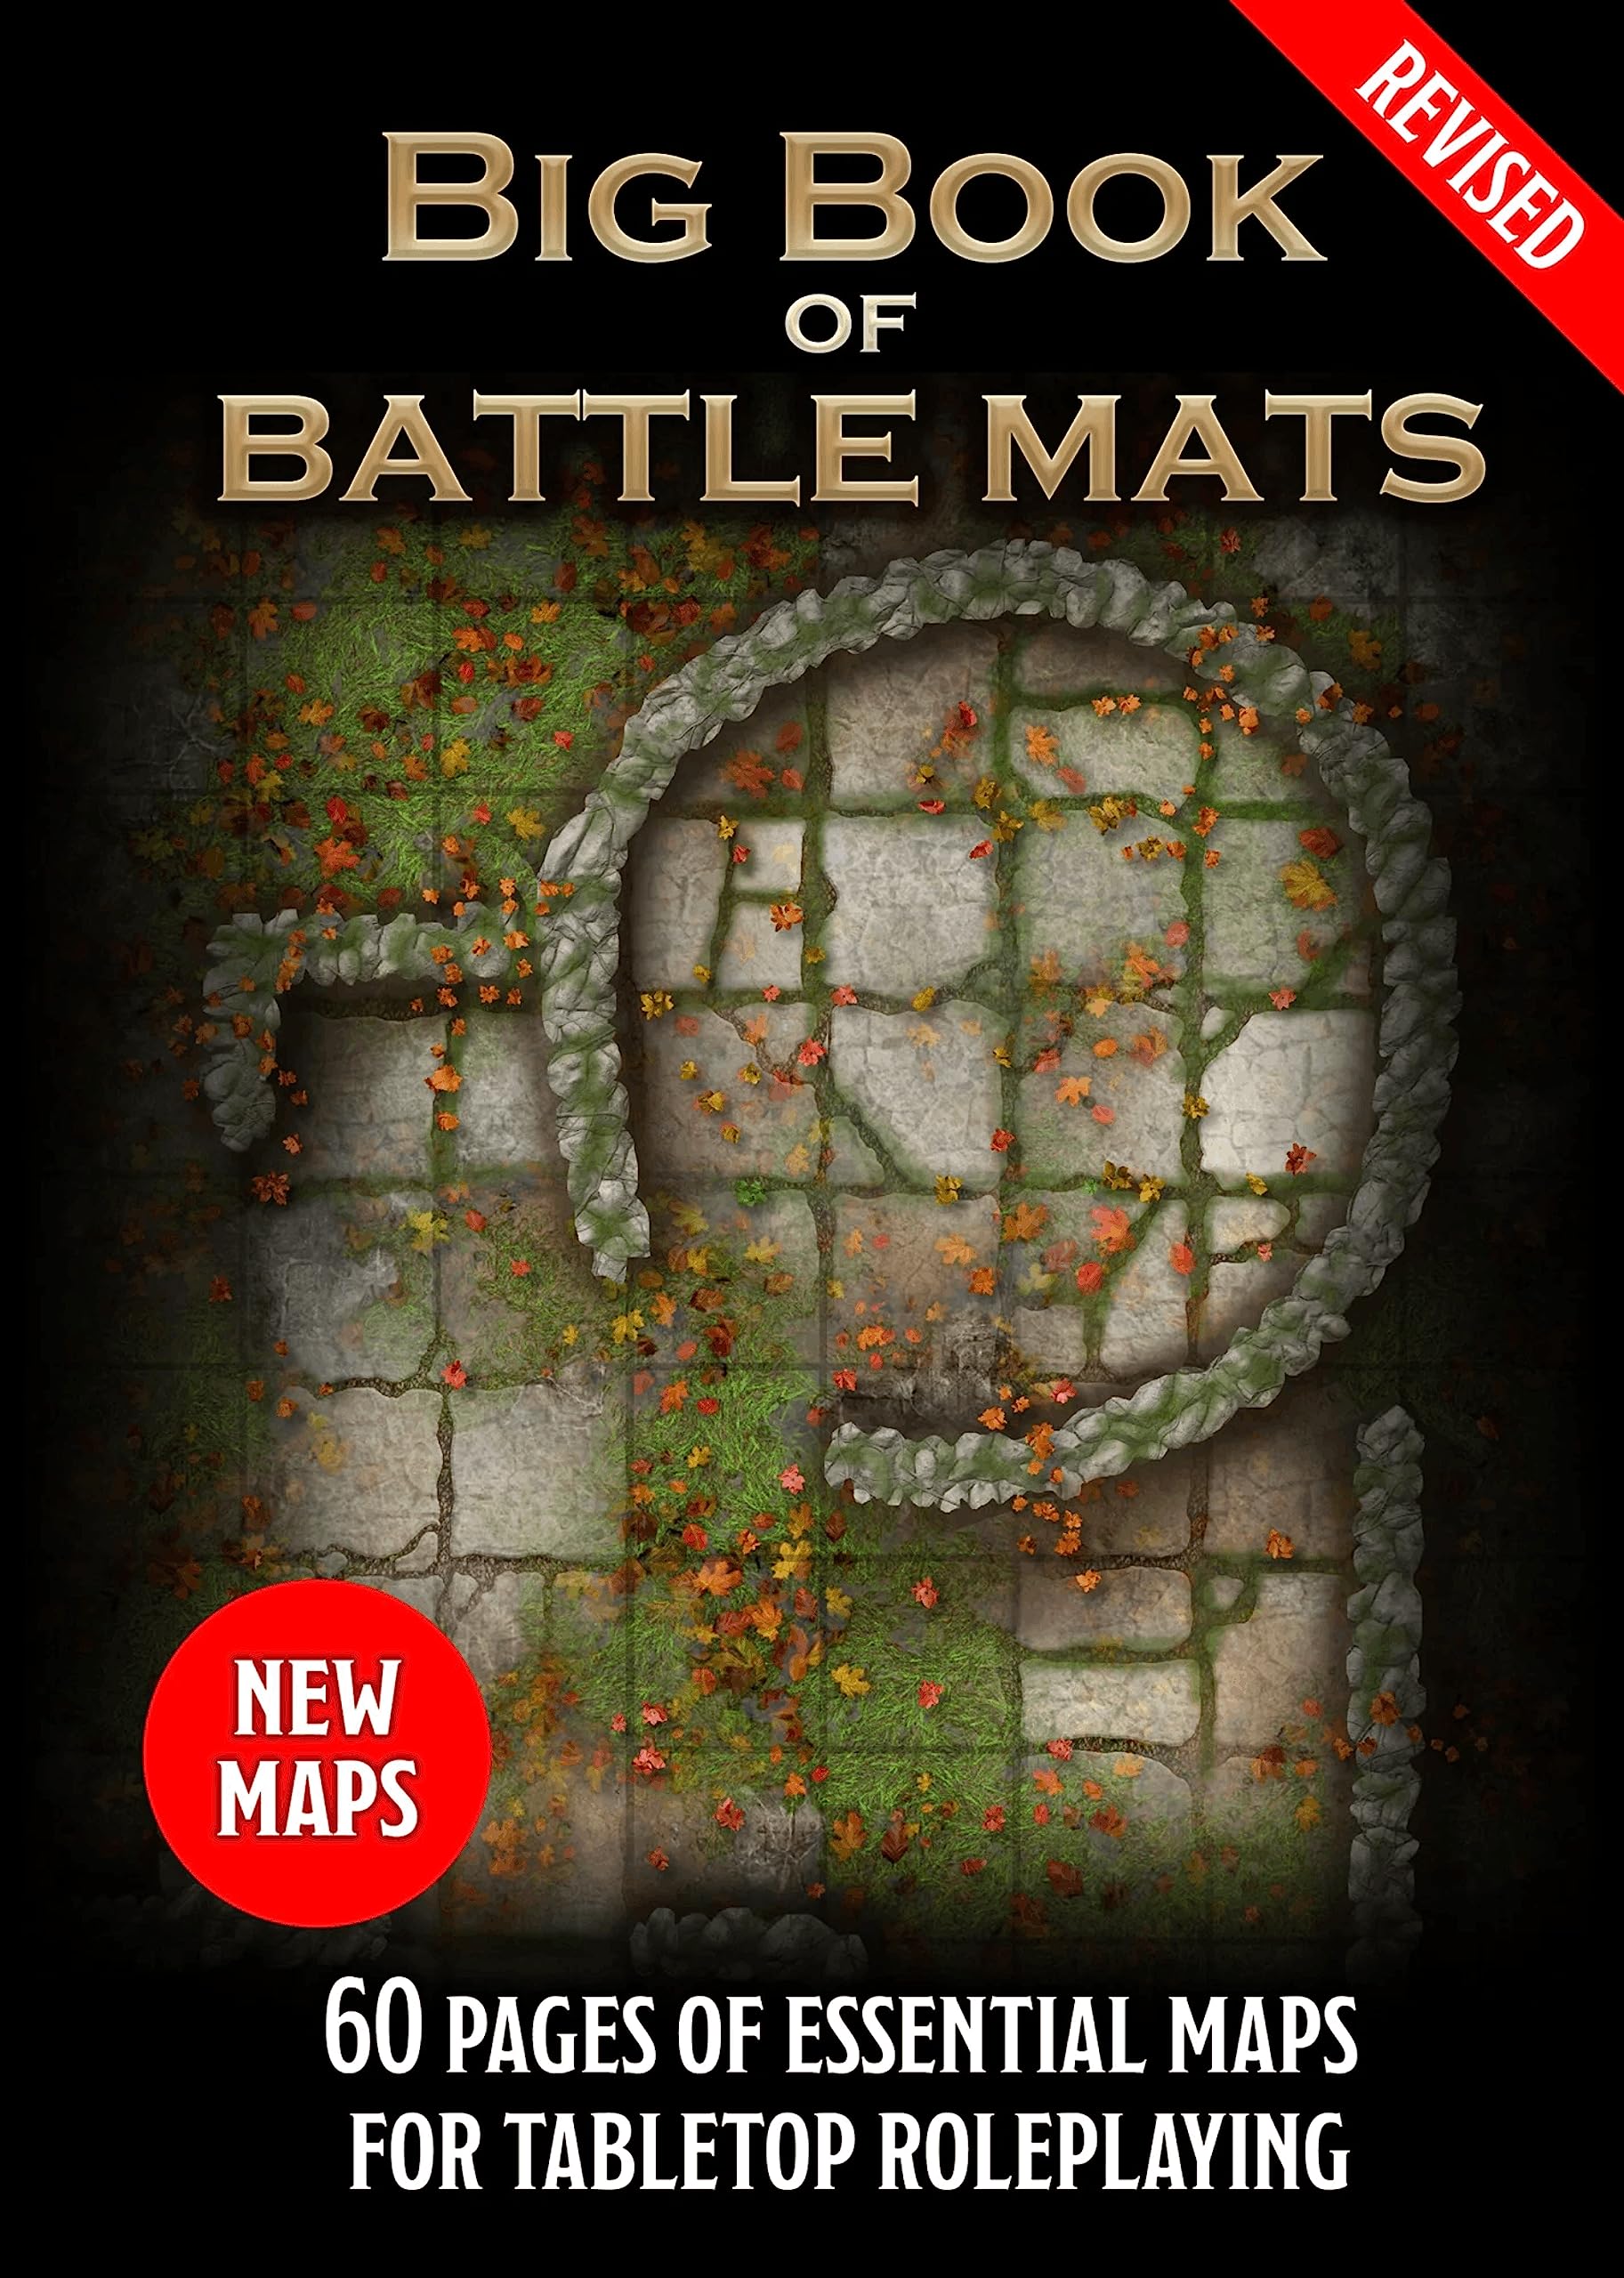 Loke Battle Mats Accessories Loke Battle Mats Battle Mats: Big Book of Battle Mats Revised